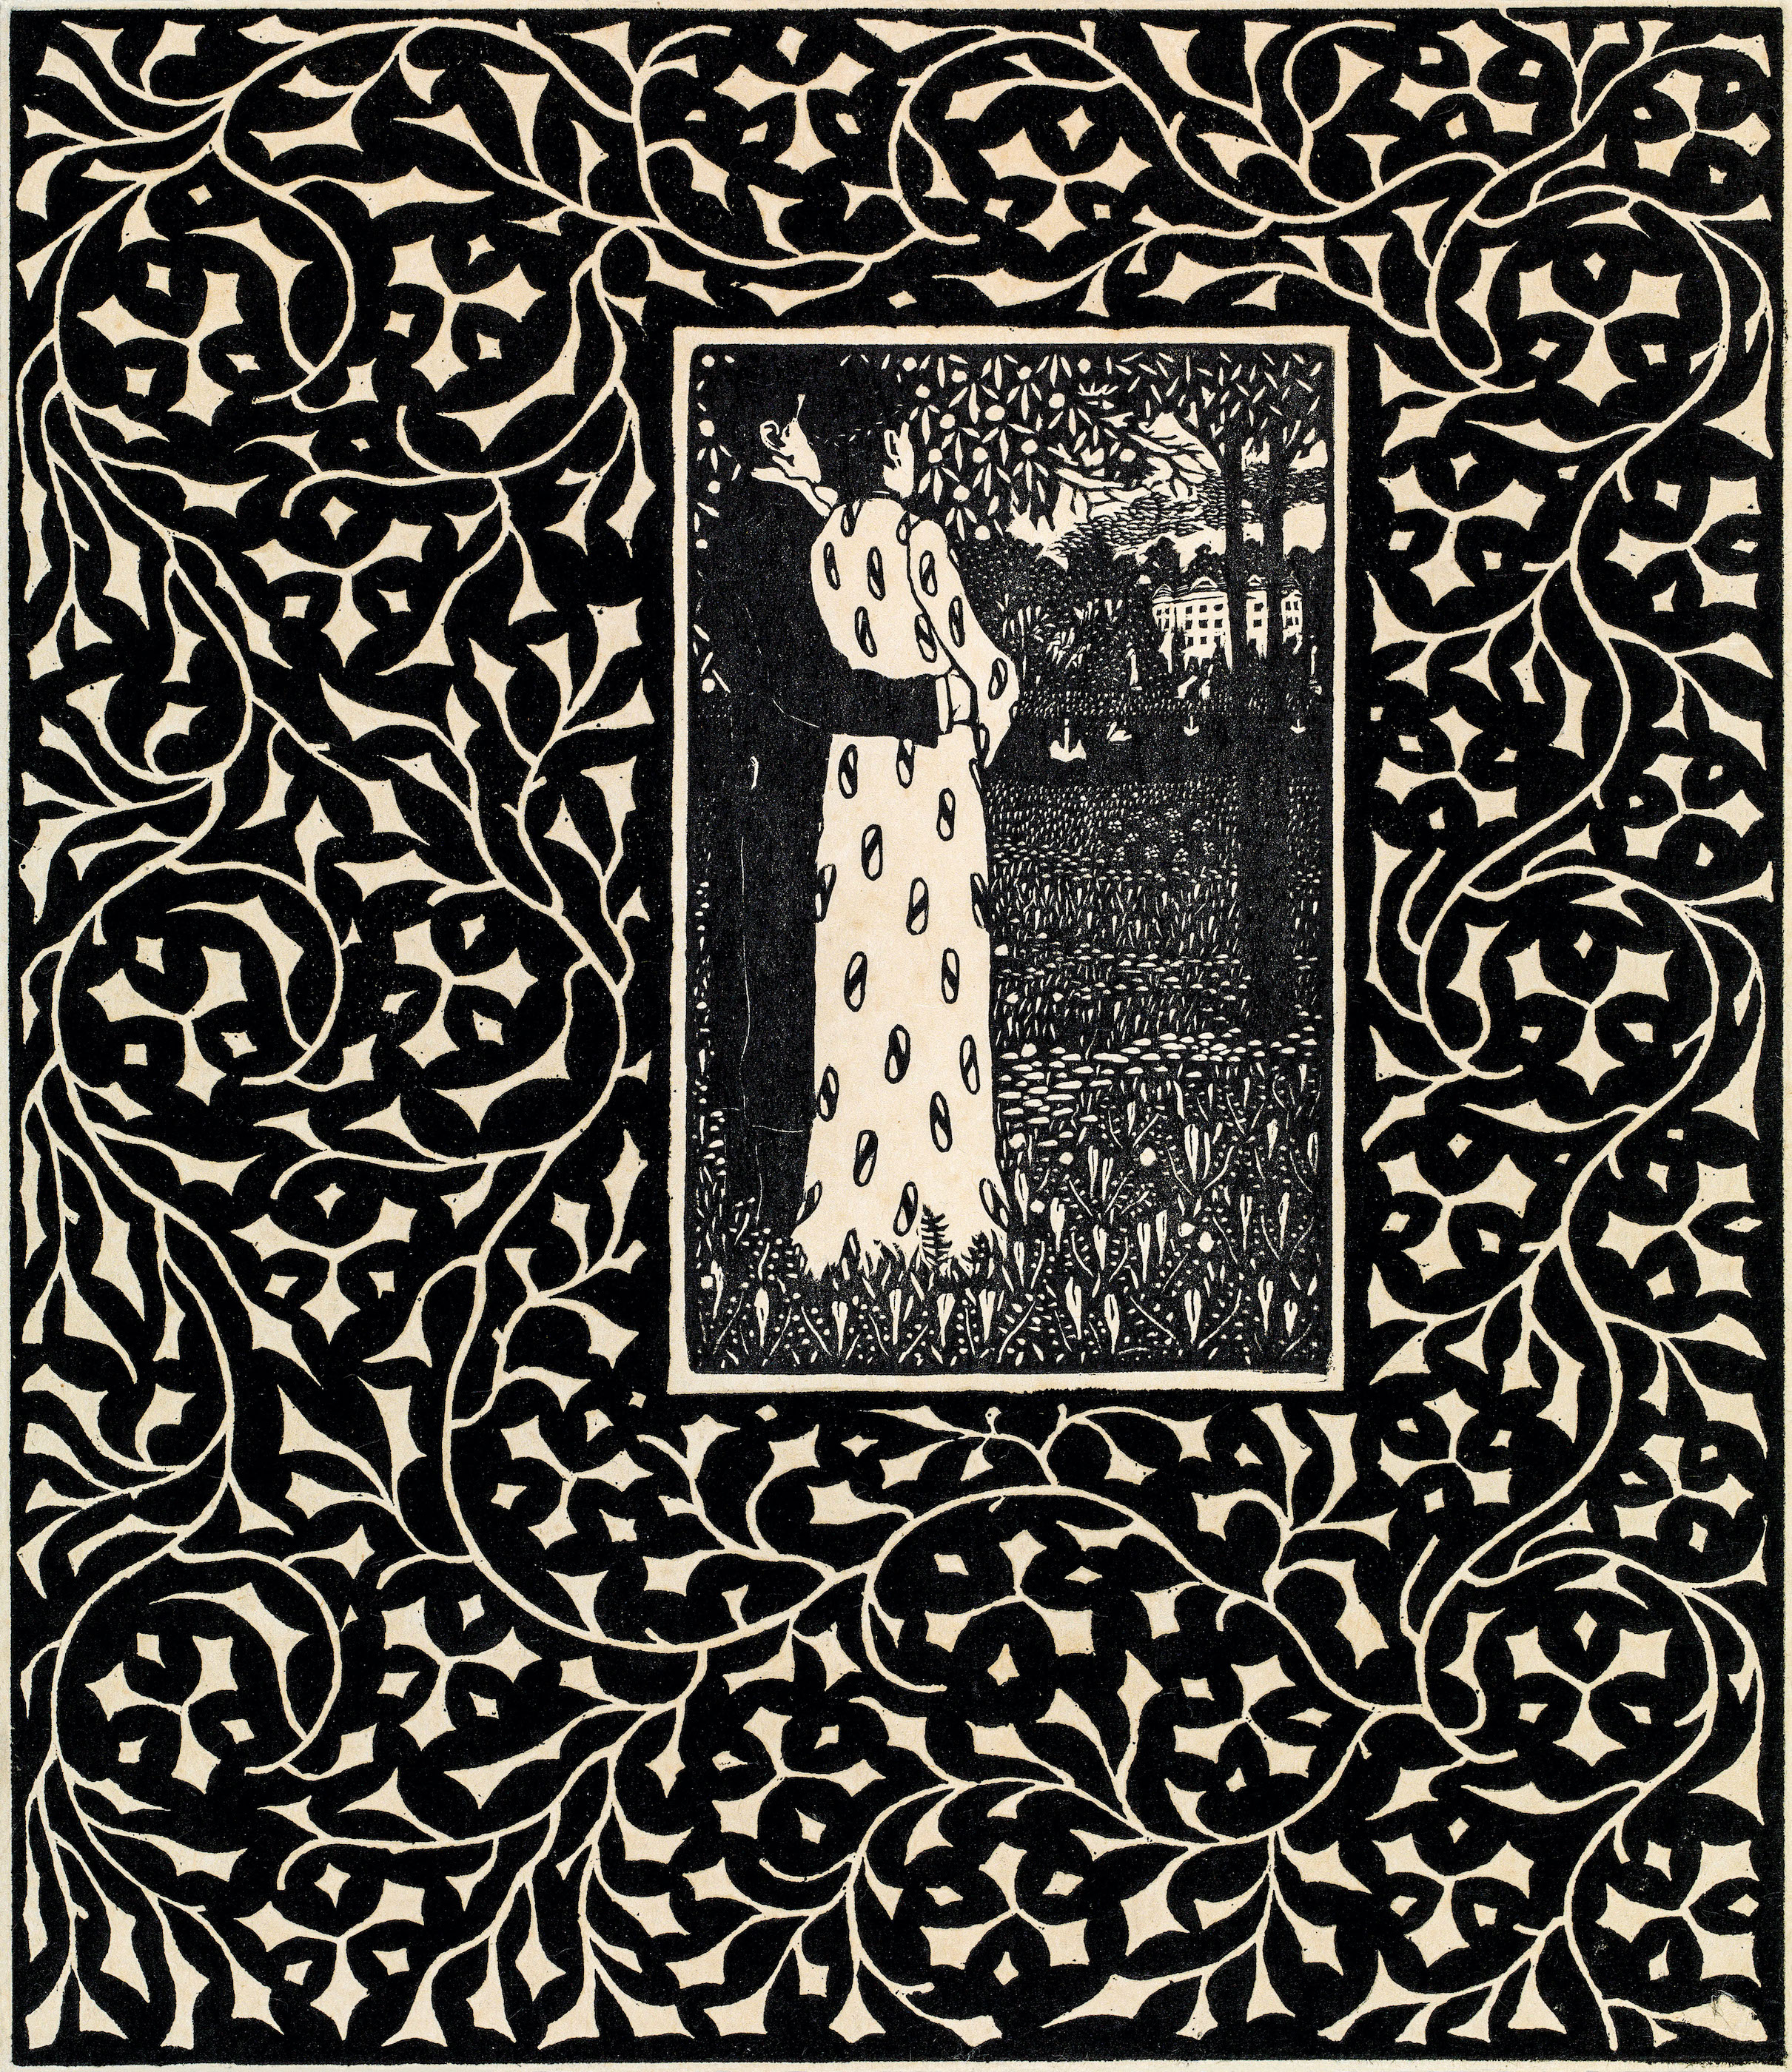 Четири годишња доба 1906. by Carl Krenek - 1906. - 26,6 x 22,1 cm 